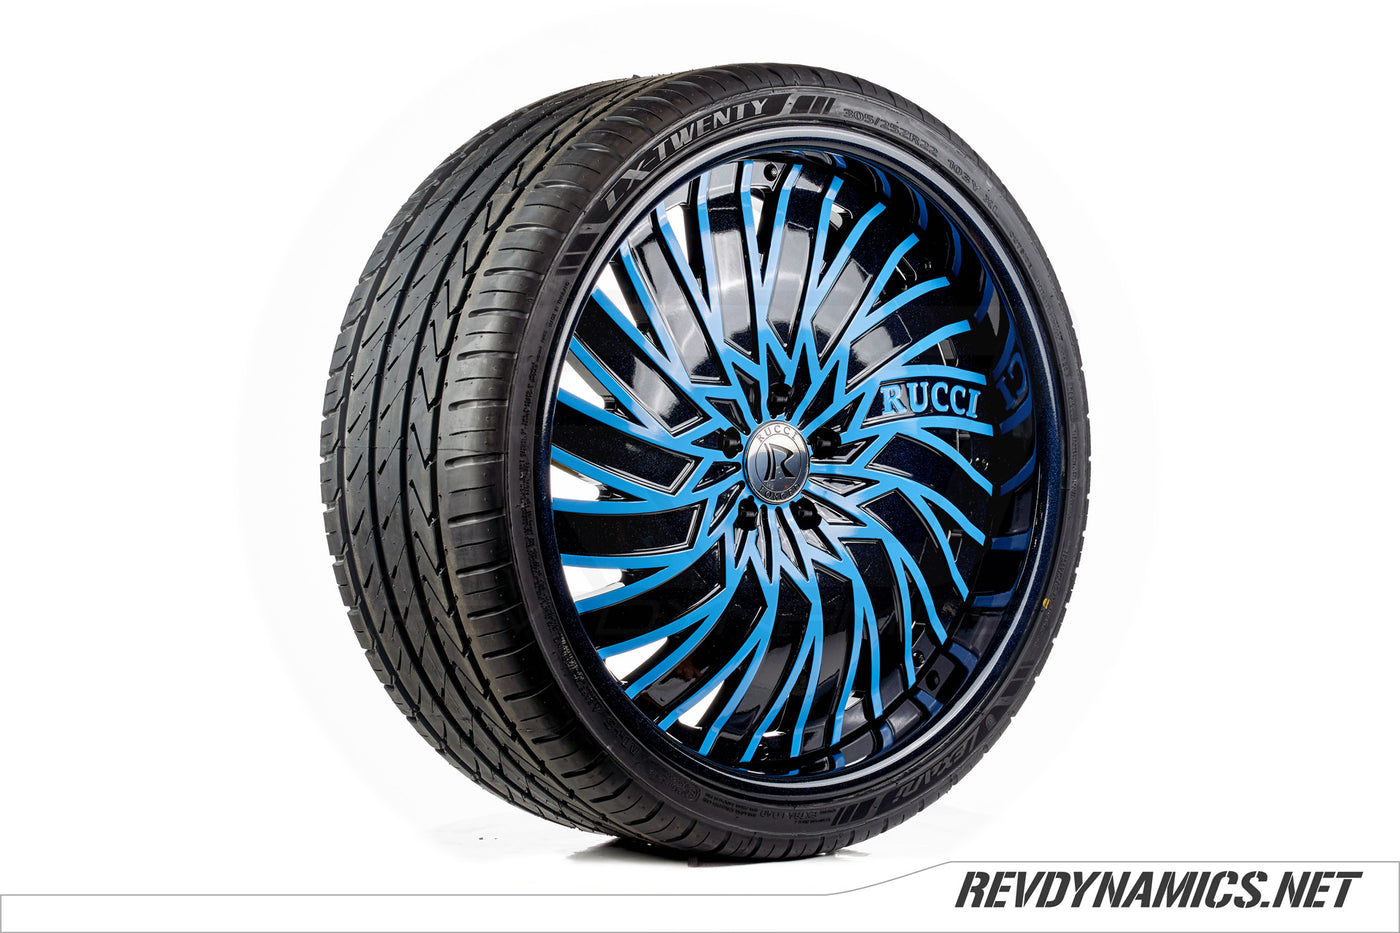 Rucci Squad 22" Wheel in Miami Blue and Metallic Black